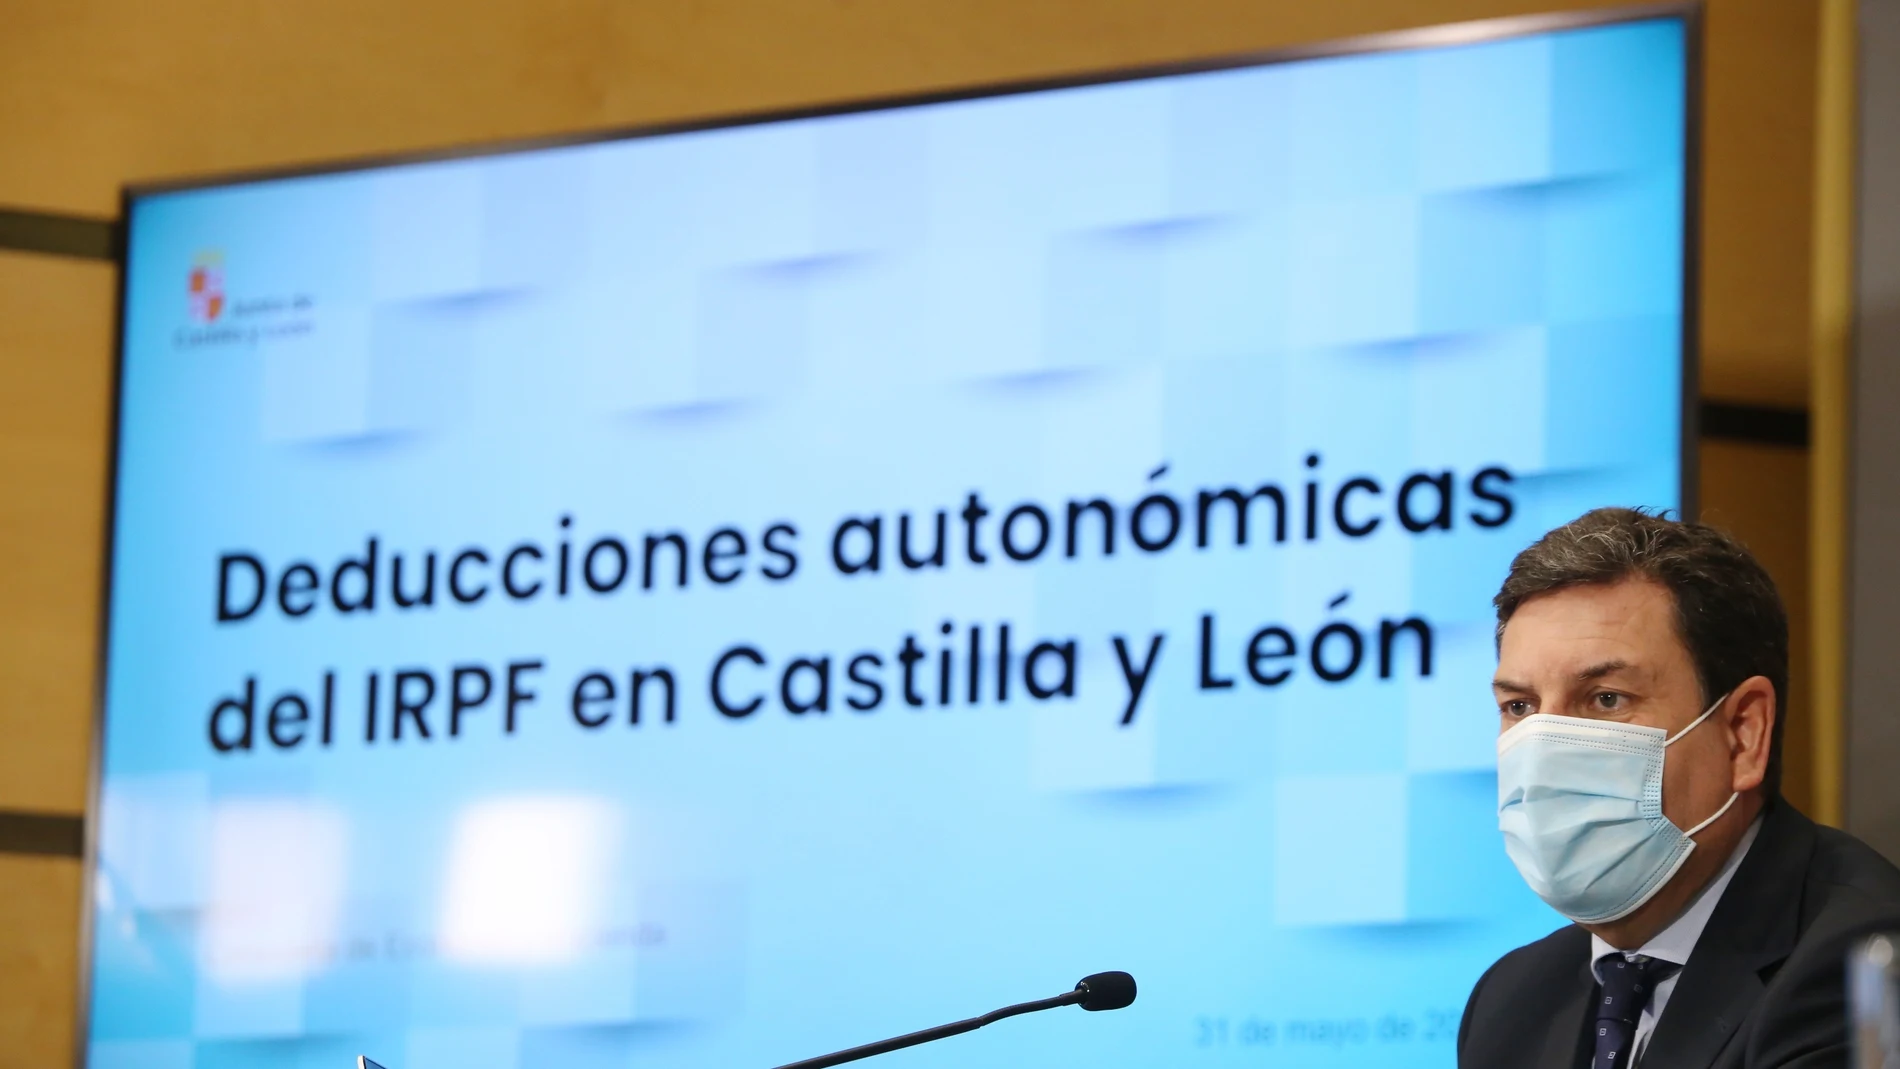 El consejero de Economía y Hacienda, Carlos Fernández Carriedo, presenta las deducciones autonómicas del IRPF en Castilla y León y la campaña de ayuda a la Declaración de la Renta 2020 en el medio rural